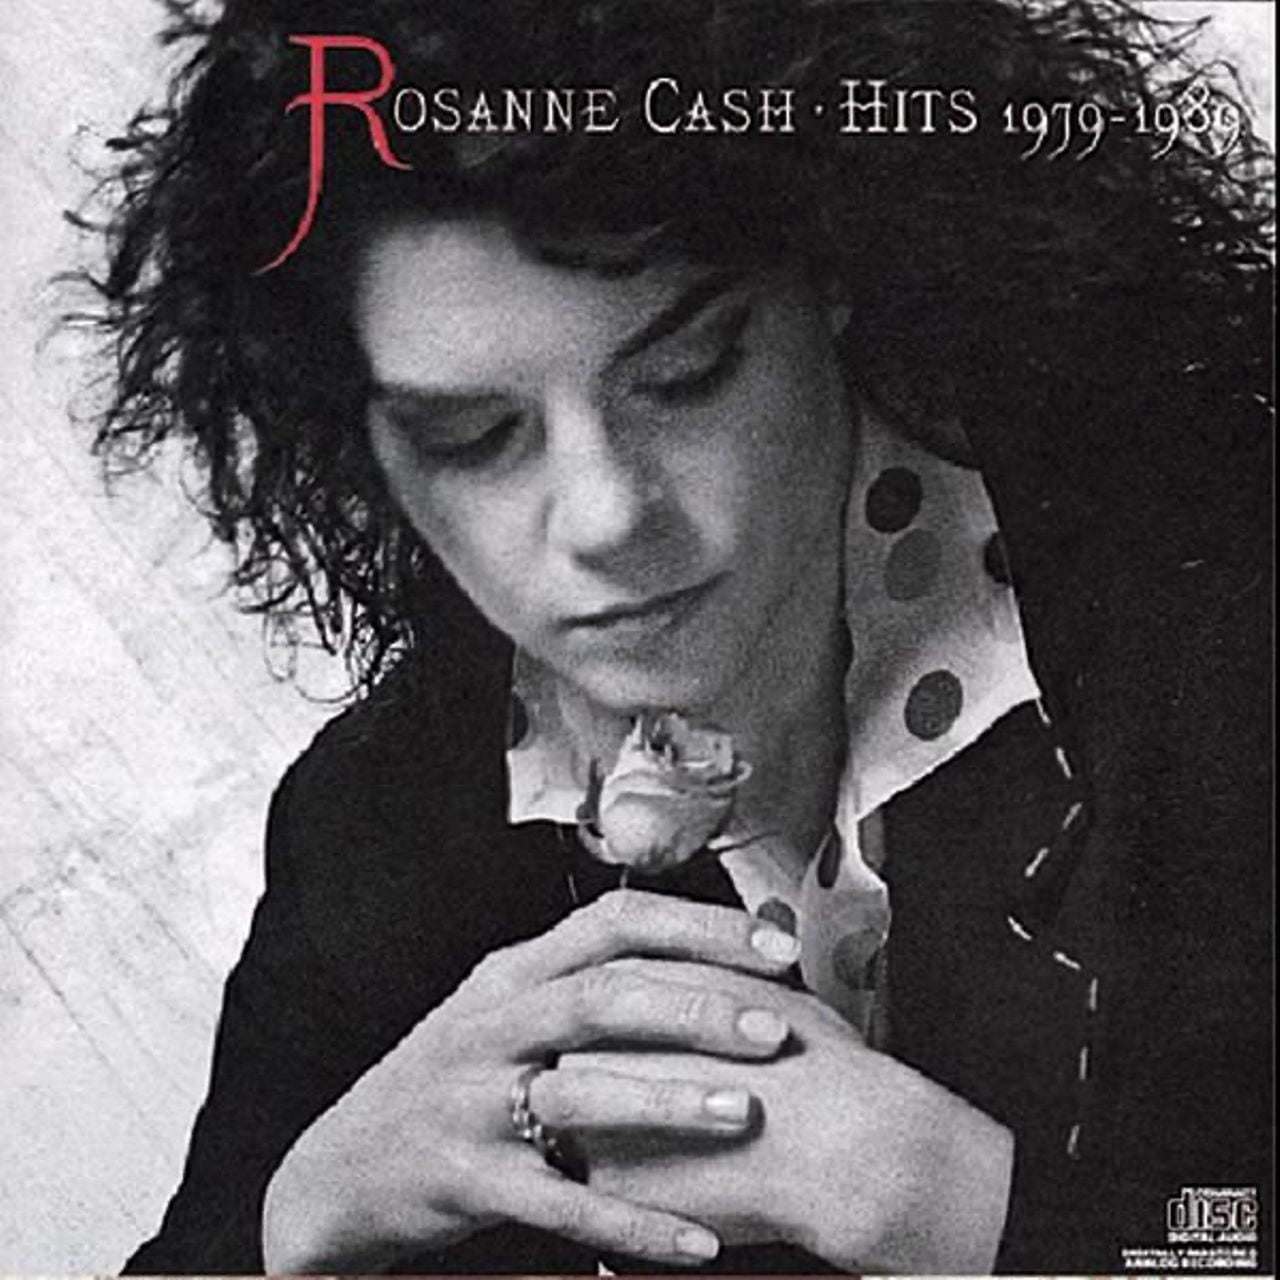 Rosanne Cash - Hits 1979-1989 cover album